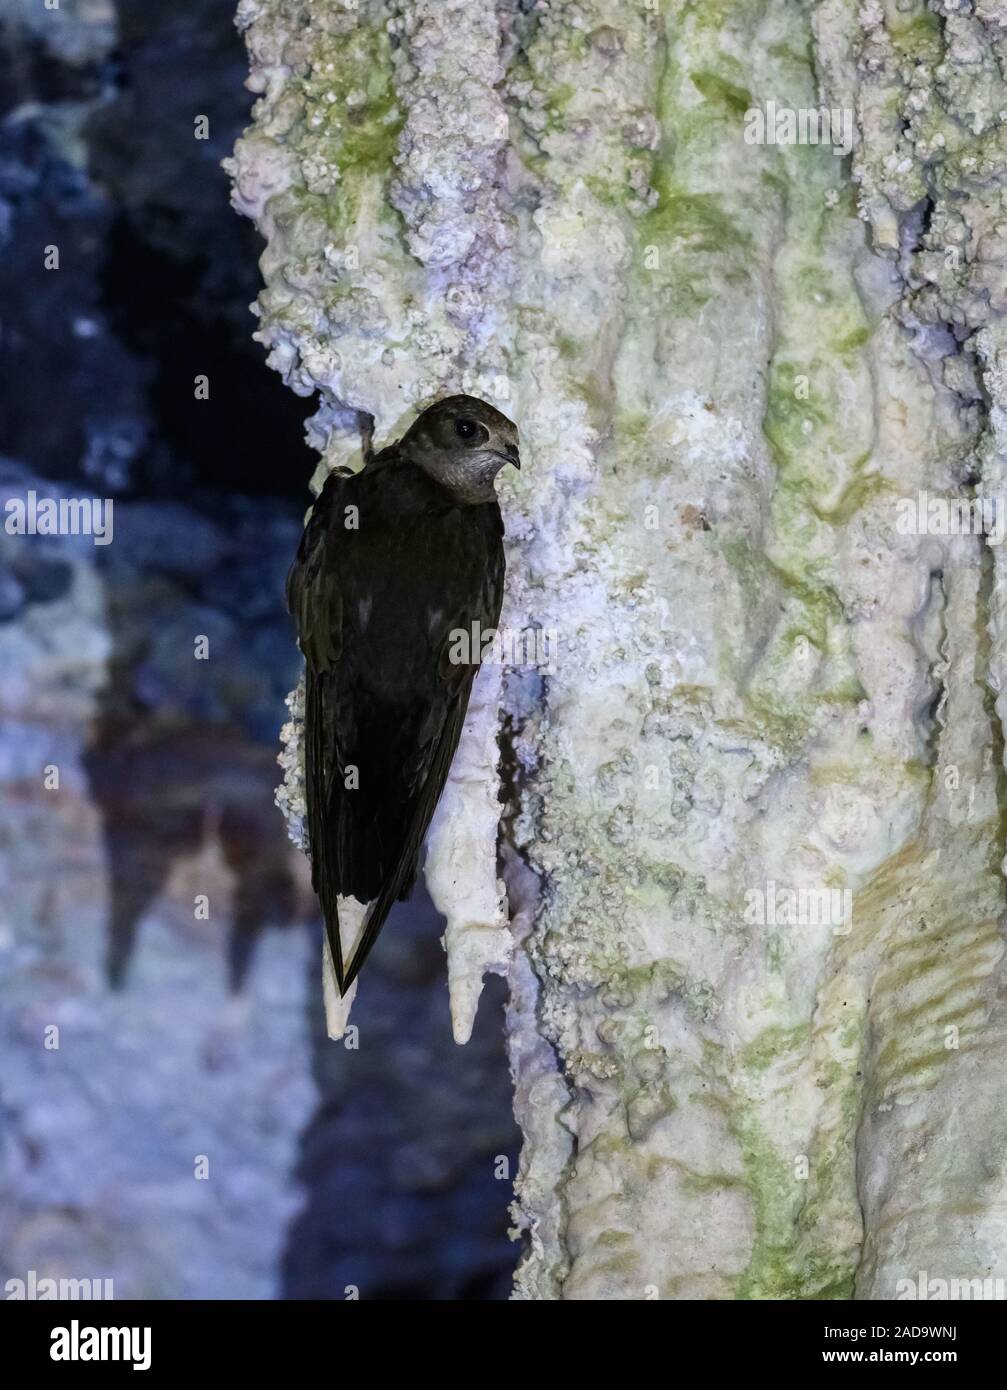 Eine Biscutate Swift (Streptoprocne biscutata) hängen an Stalaktiten in eine Tropfsteinhöhle. Goias, Brasilien, Südamerika. Stockfoto